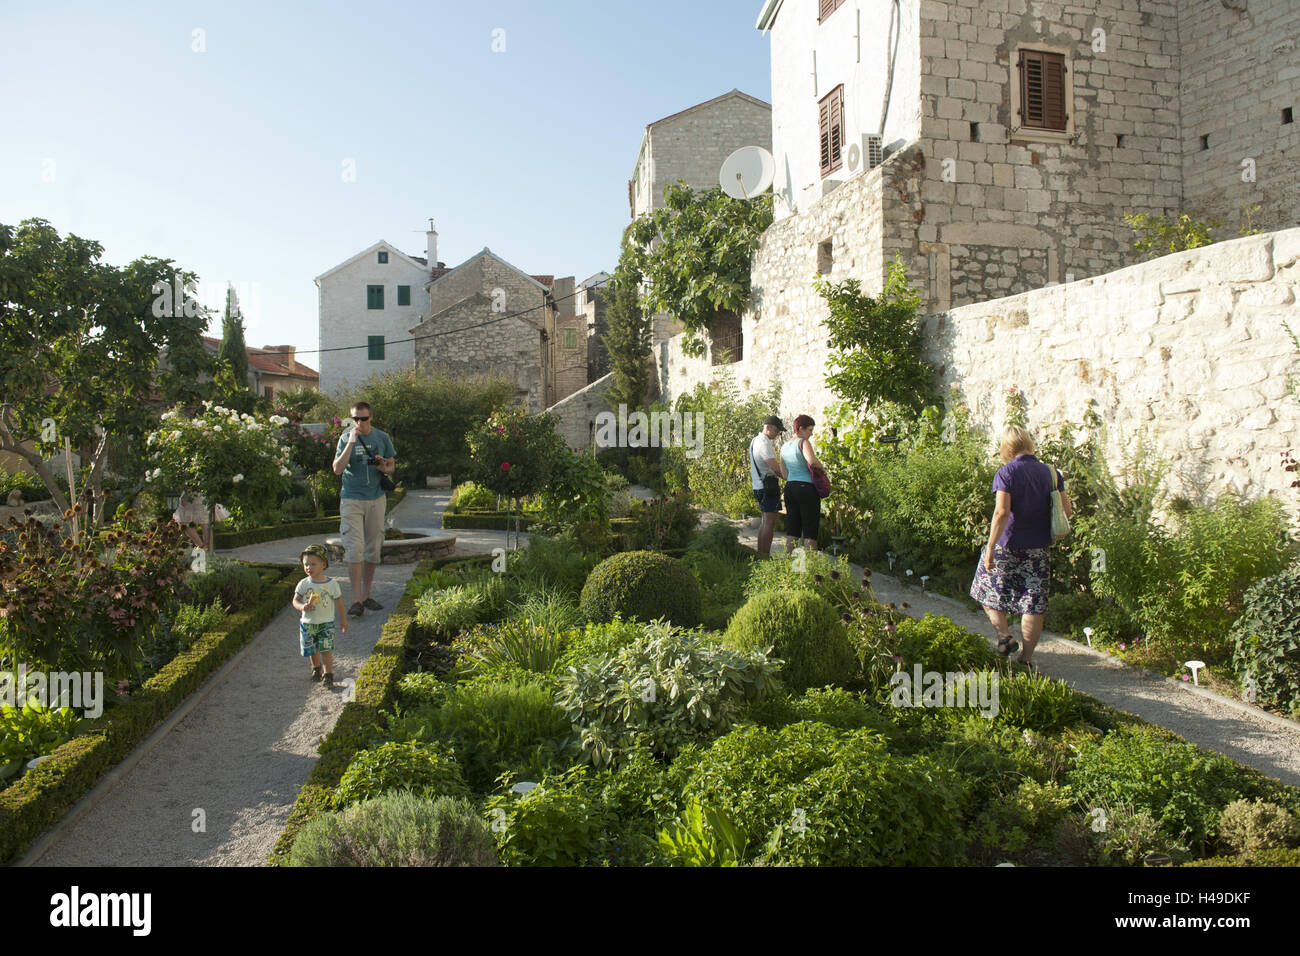 Croatia, Dalmatia, Sibenik, herb garden, visitor, Stock Photo